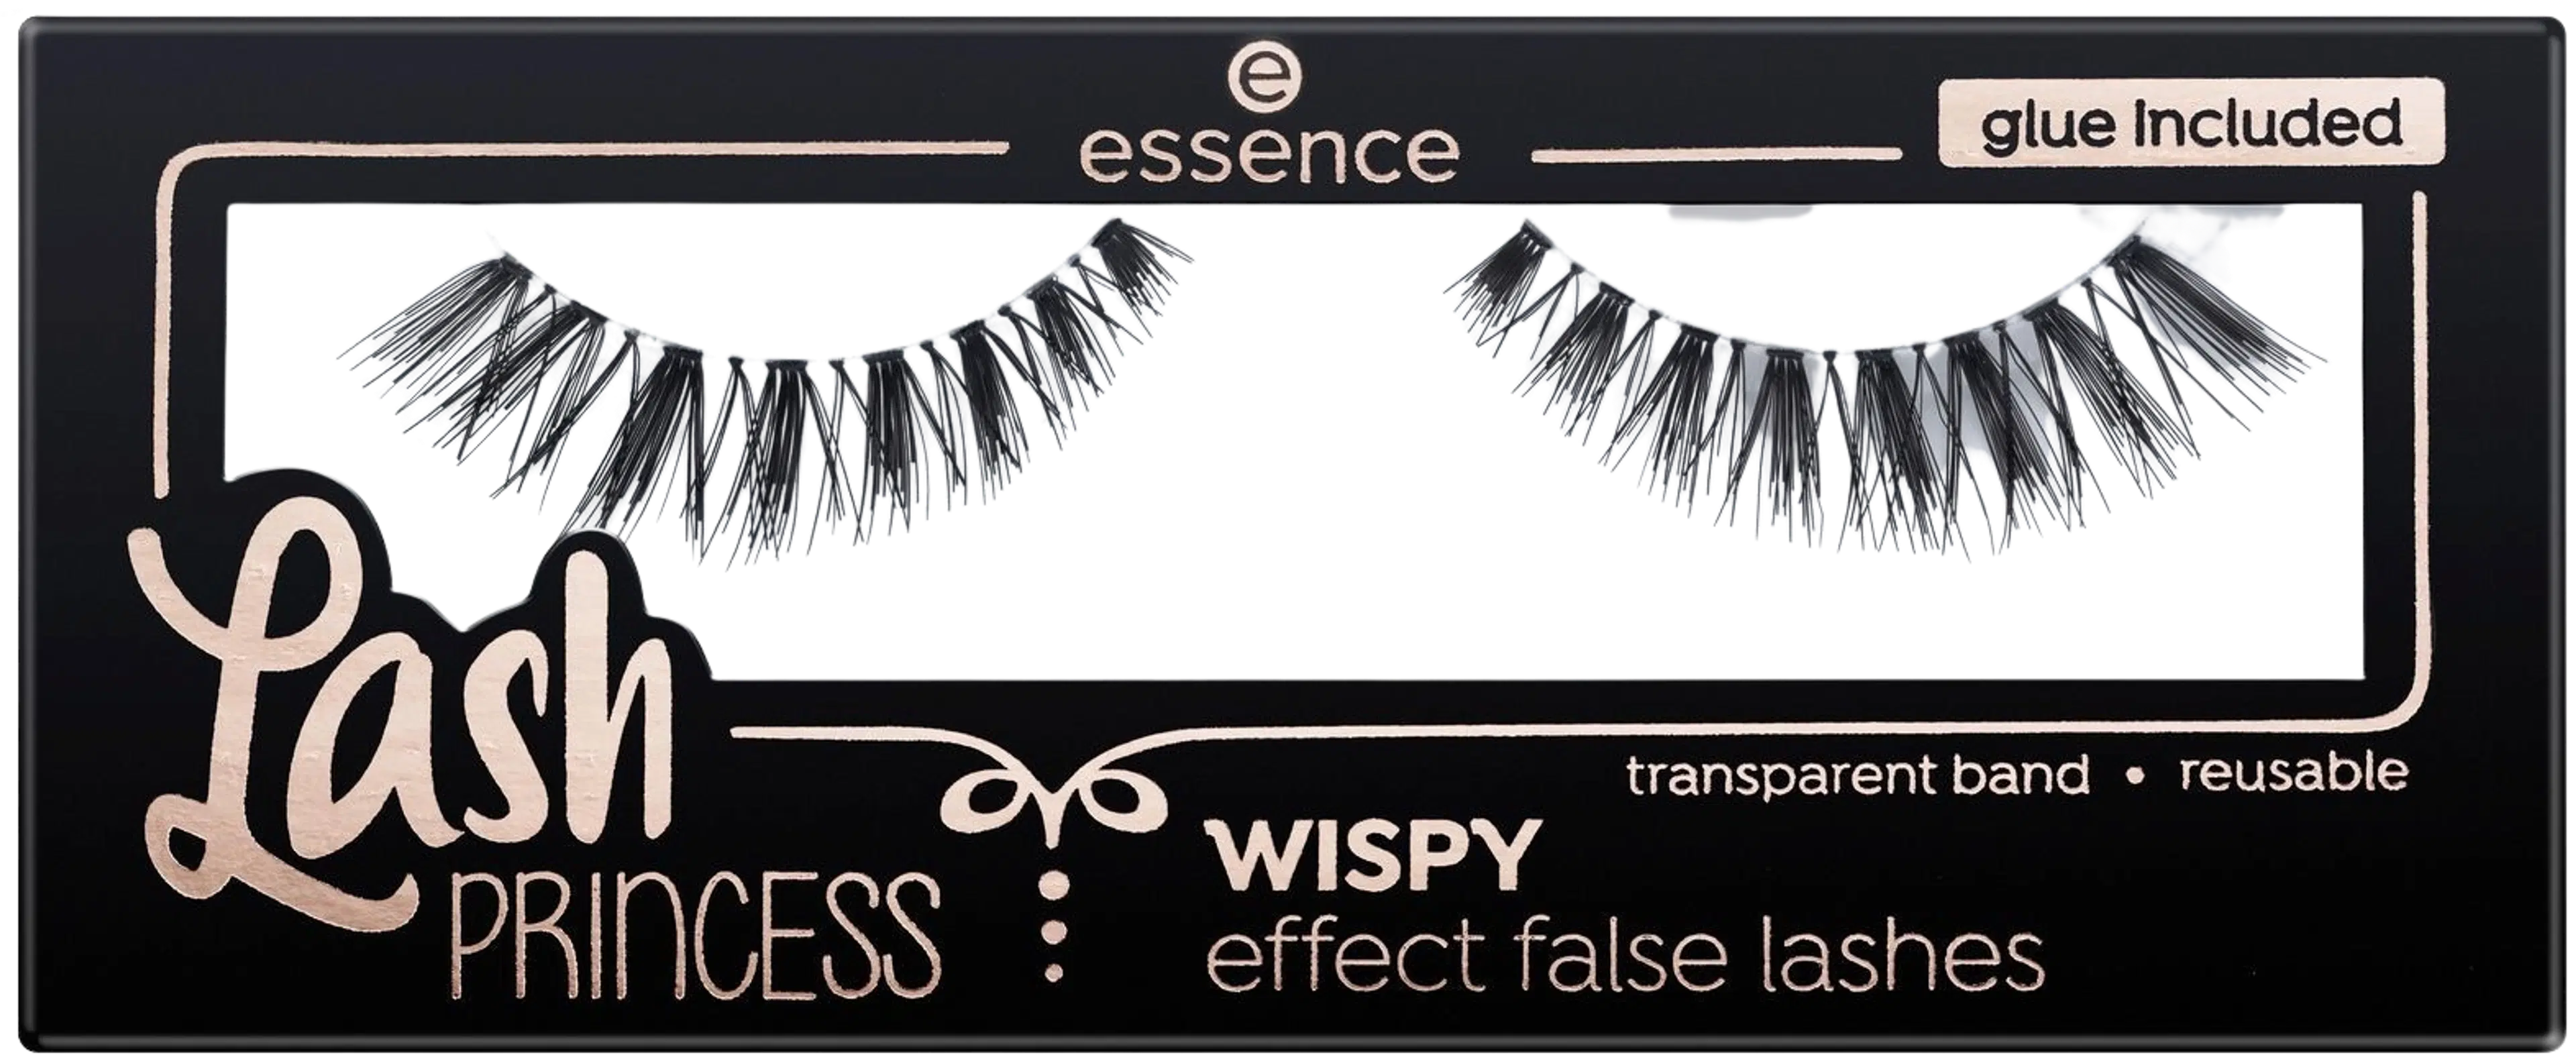 essence Lash PRINCESS WISPY effect false lashes irtoripset